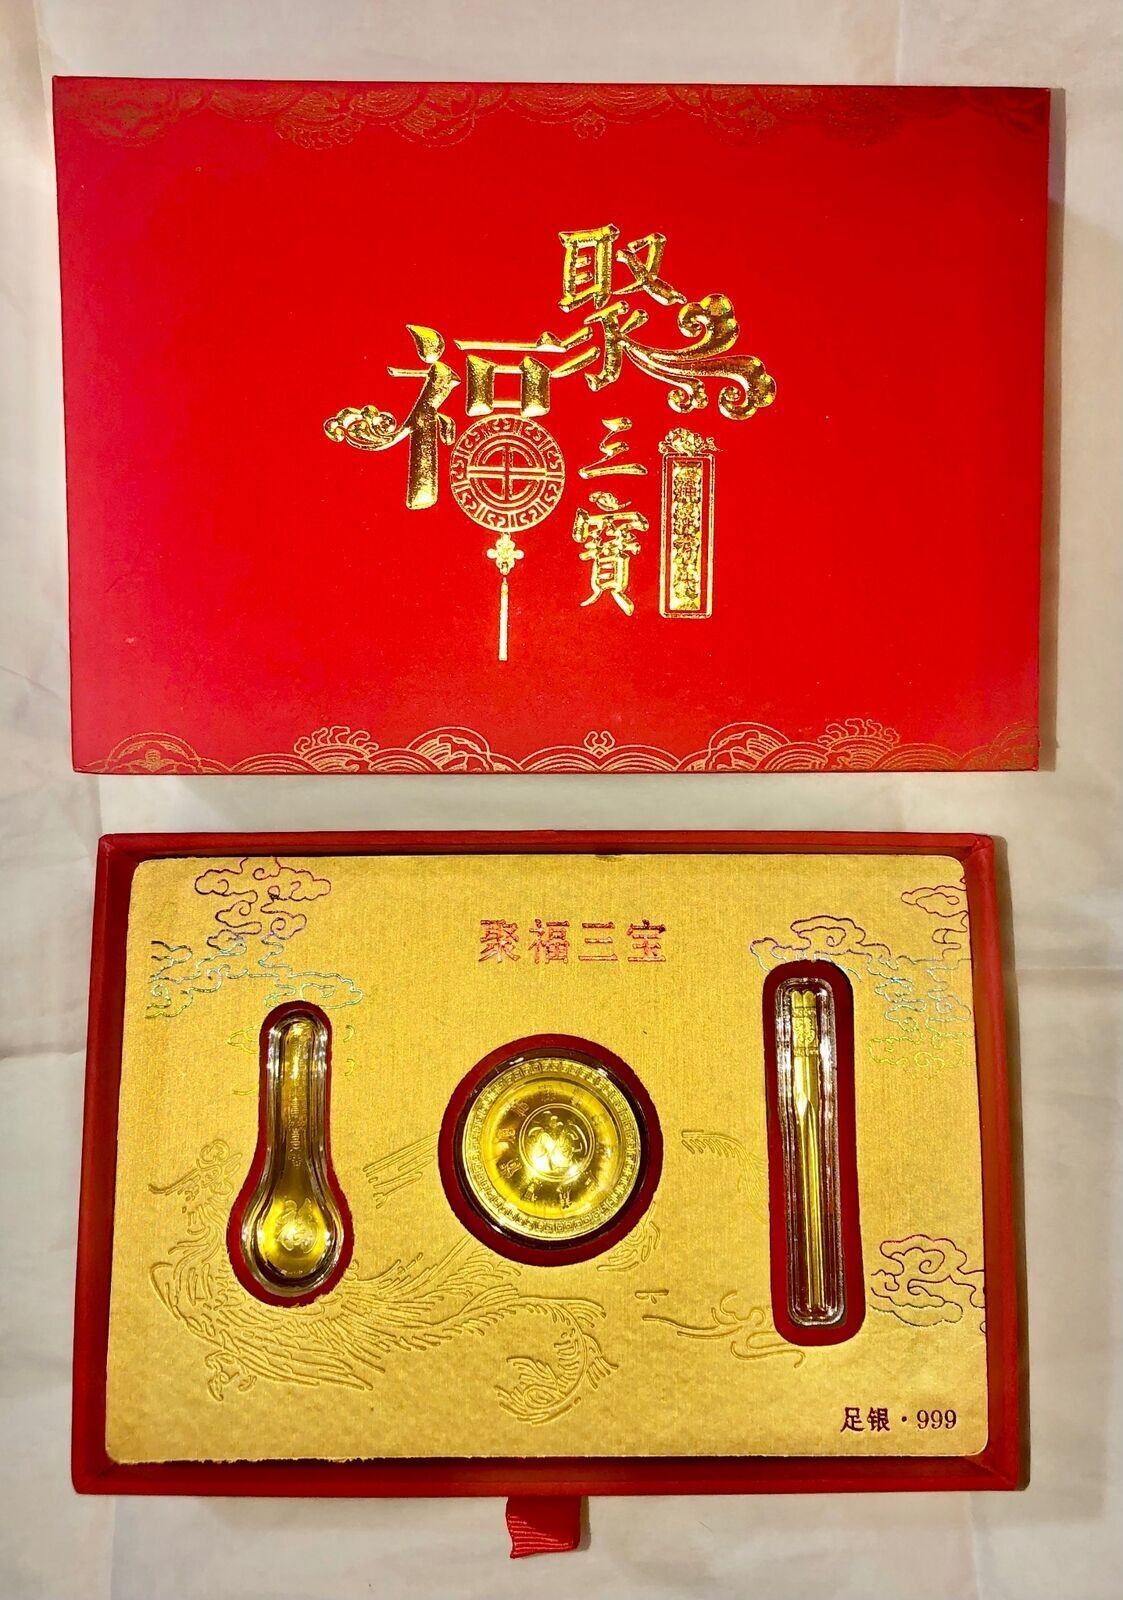 Miniature Golden Rice Bowl Spoon Chop Stick Spoon Gift Set Feng Shui Good Luck